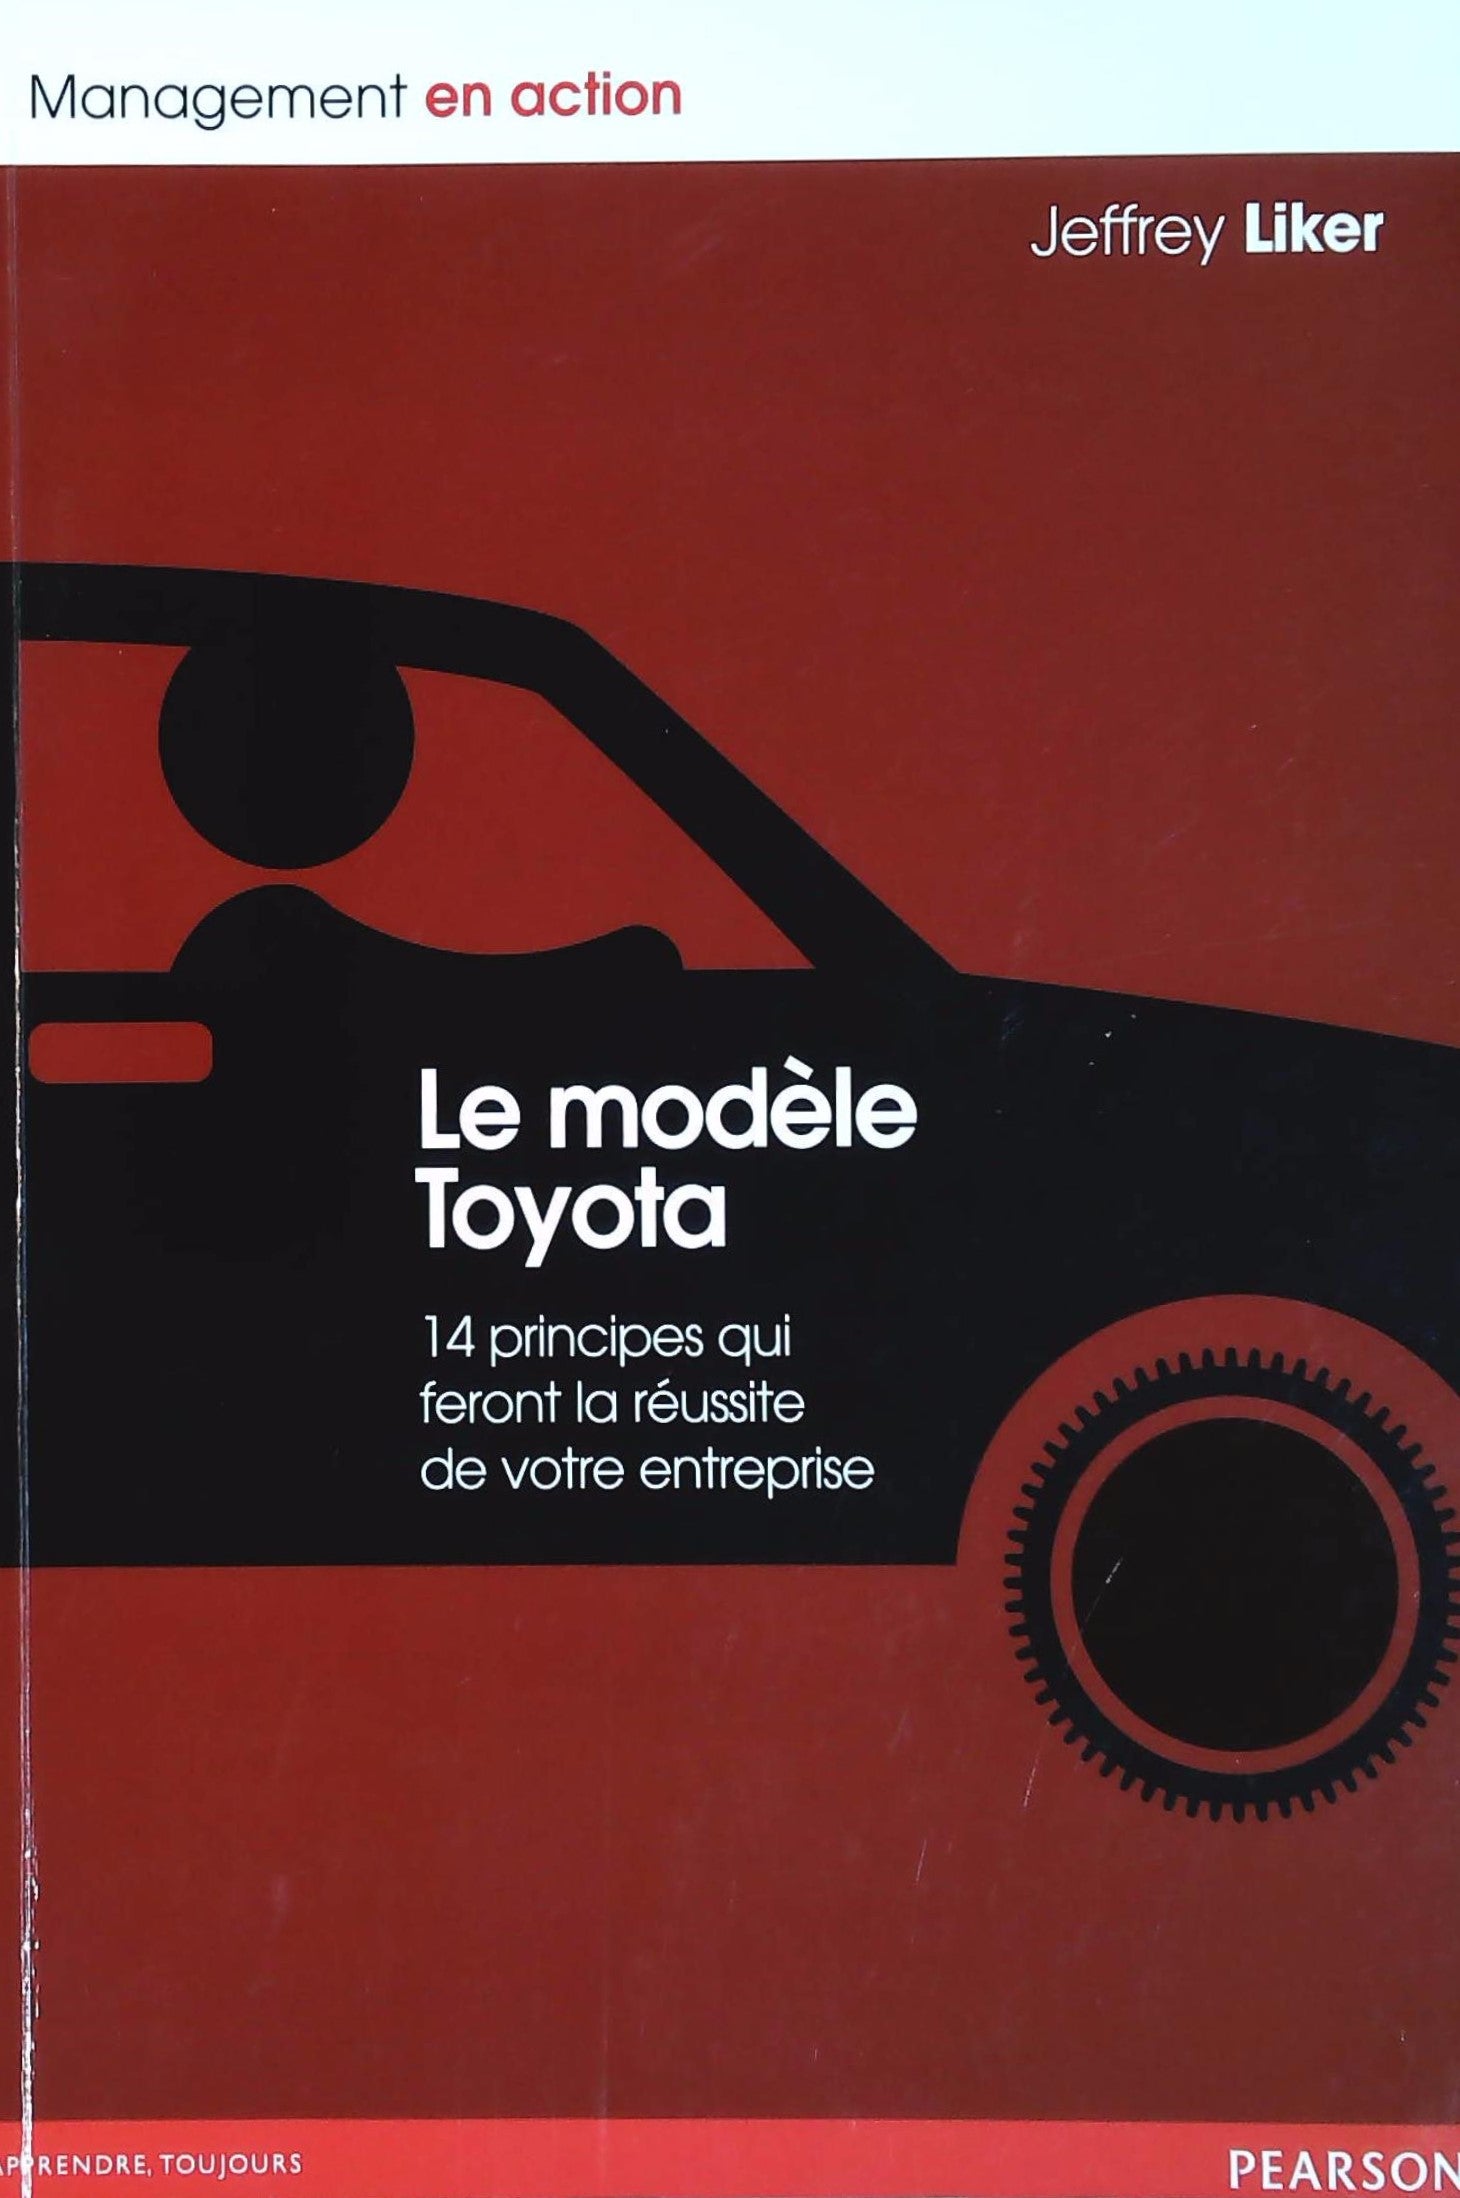 Livre ISBN  Le modèle Toyota : 14 principes qui feront la réussite de votre entreprise (Jeffrey Liker)